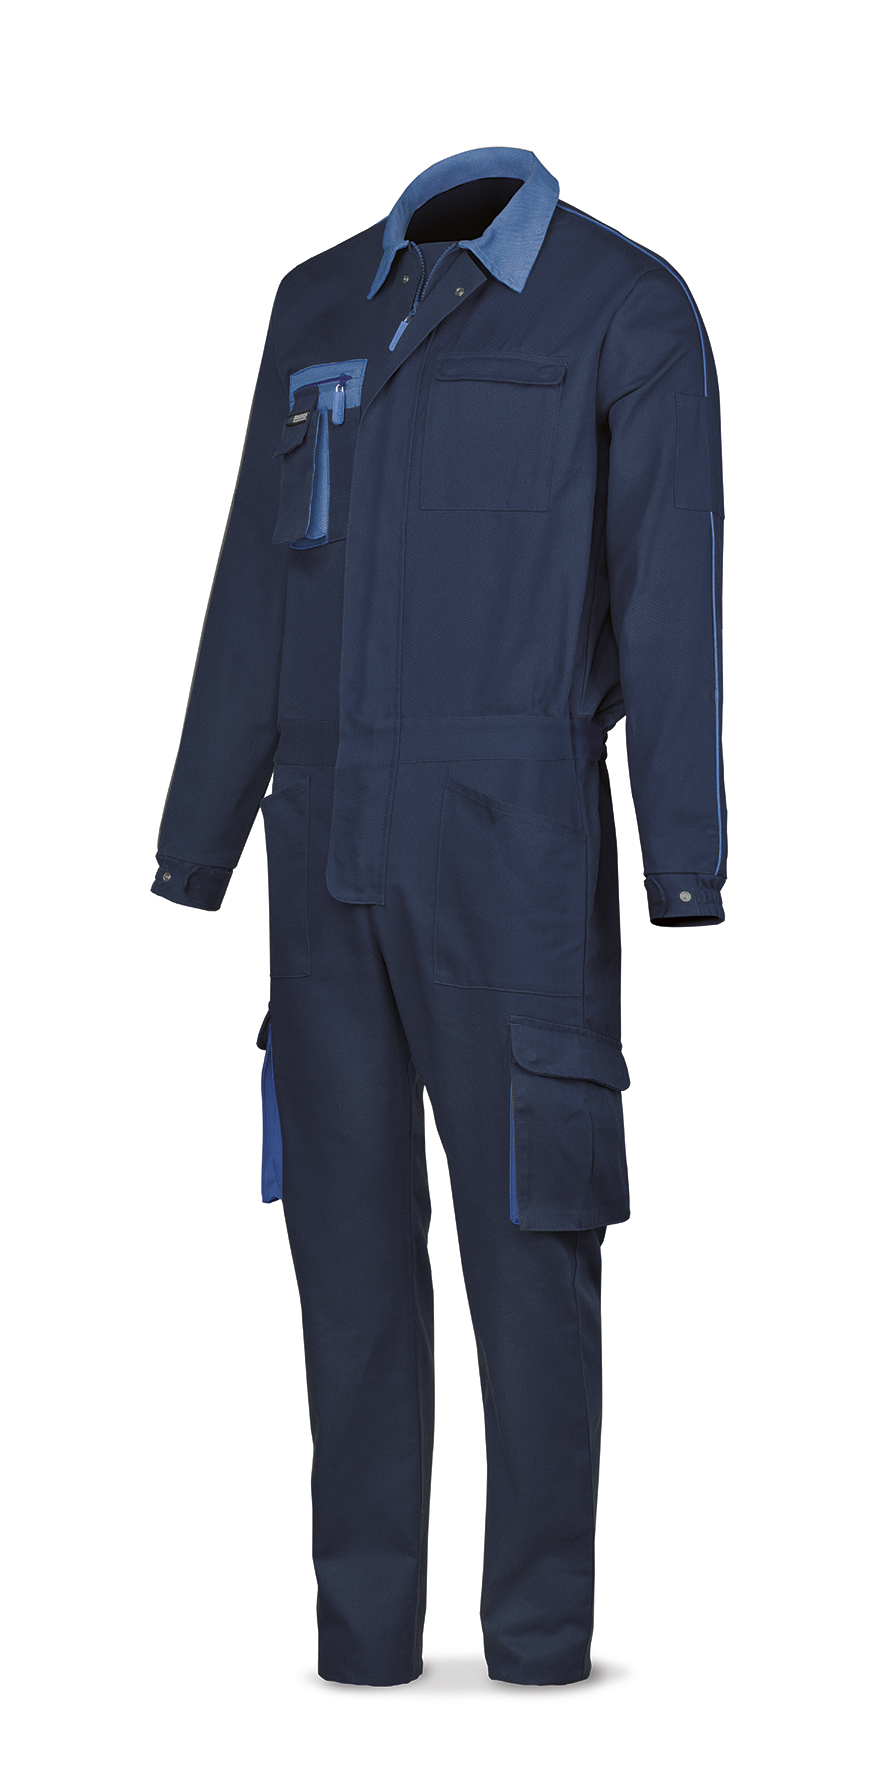 488-BSUPTOPAM Vestuario Laboral Super Top Series Macacão azul marinho de algodão 270 g. Vários bolsos